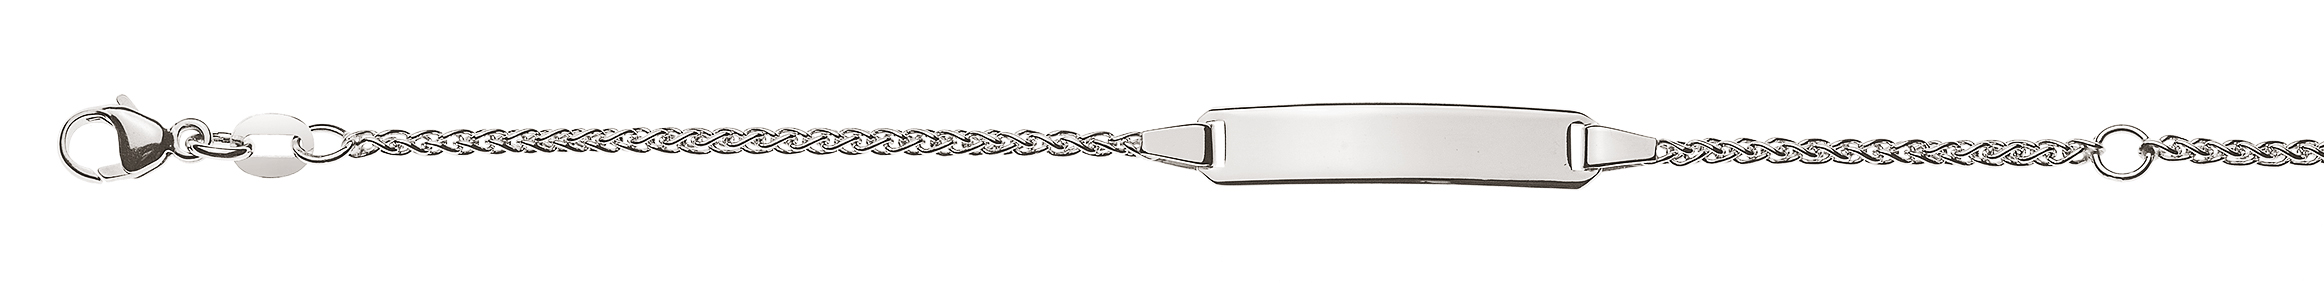 AURONOS Élégance ID-Bracelet en or blanc 14k Chaîne de tresses 14cm